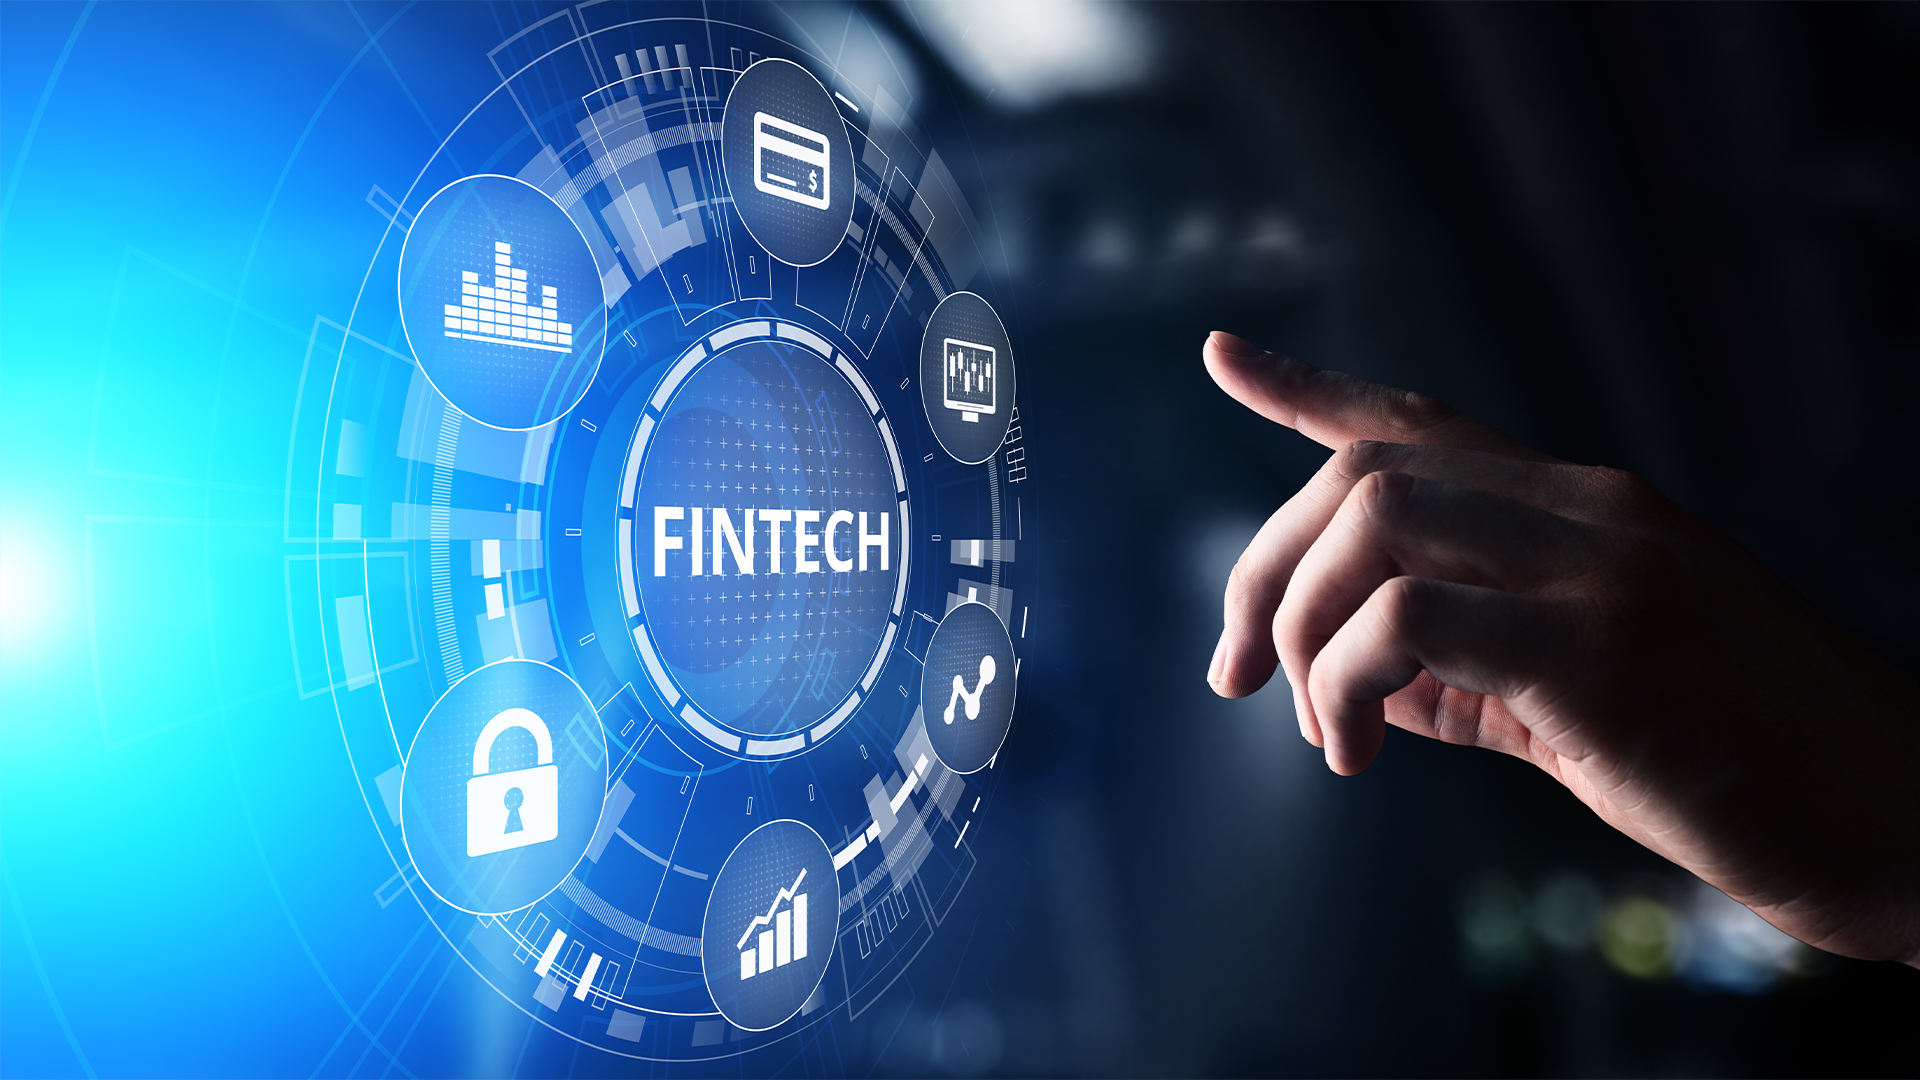 Fintech Financial technology